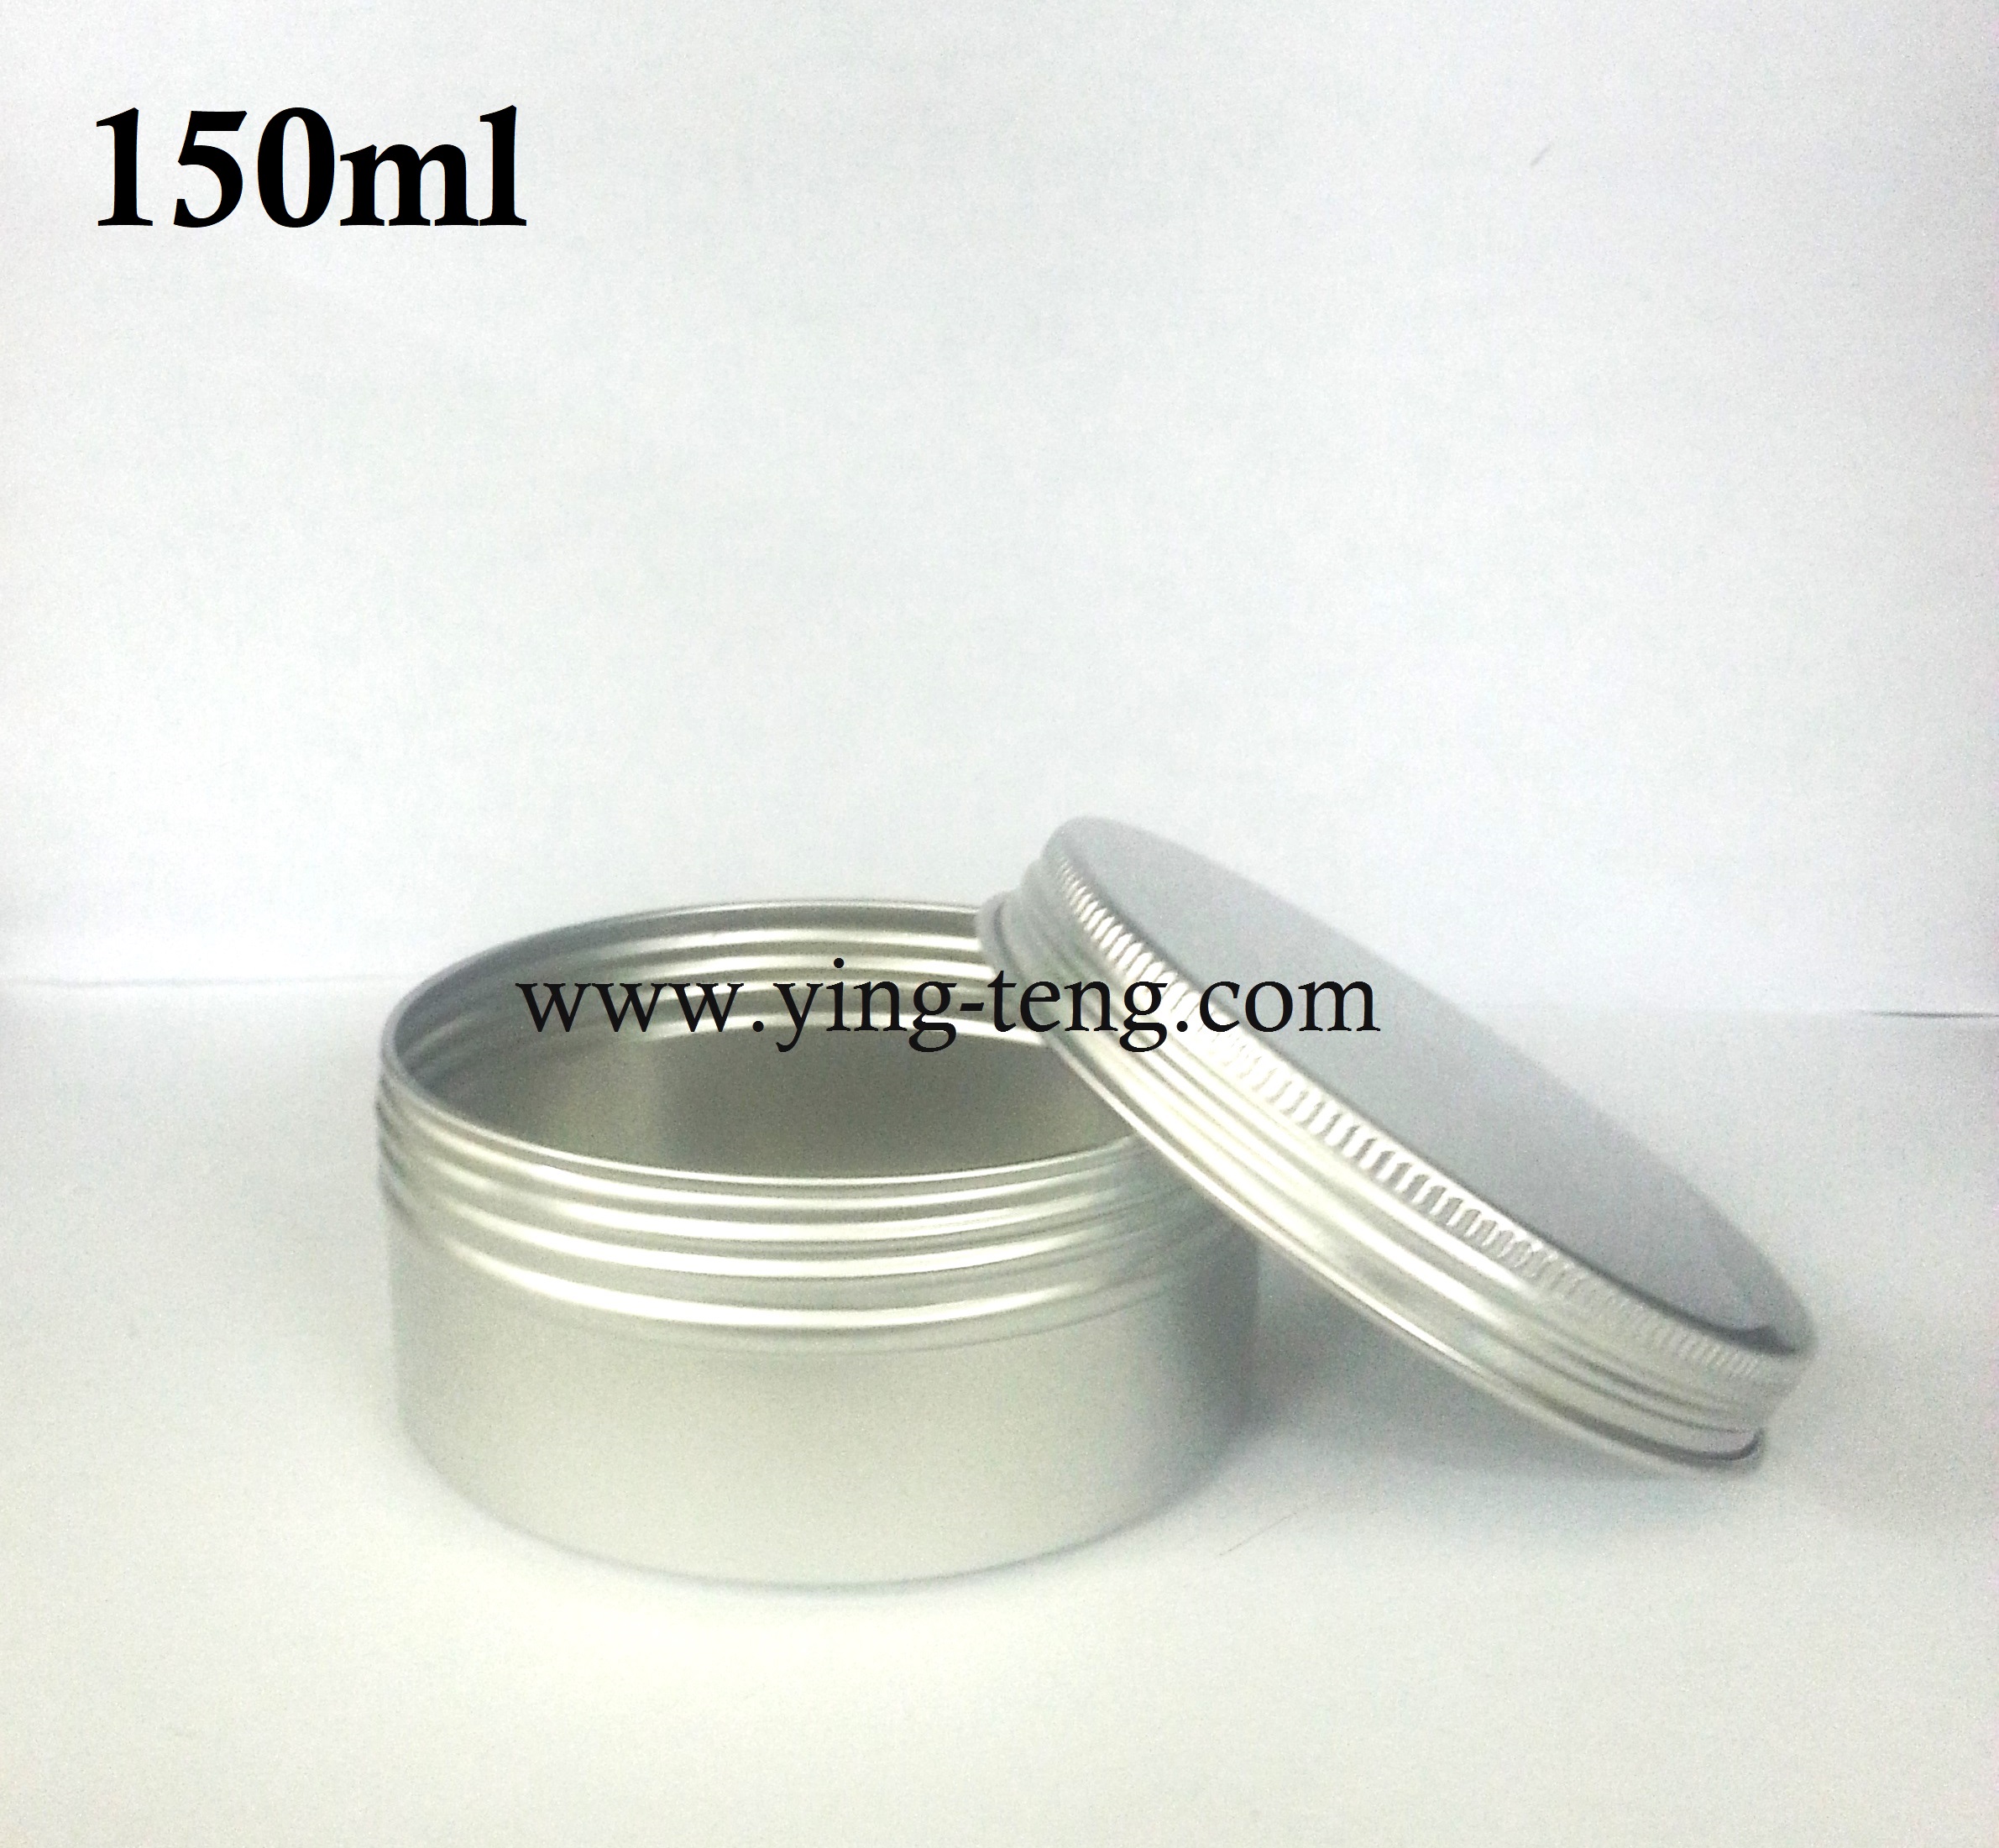 Aluminium Jar (screw cap) - 15ml, 30ml, 60ml, 100ml, 150ml ...